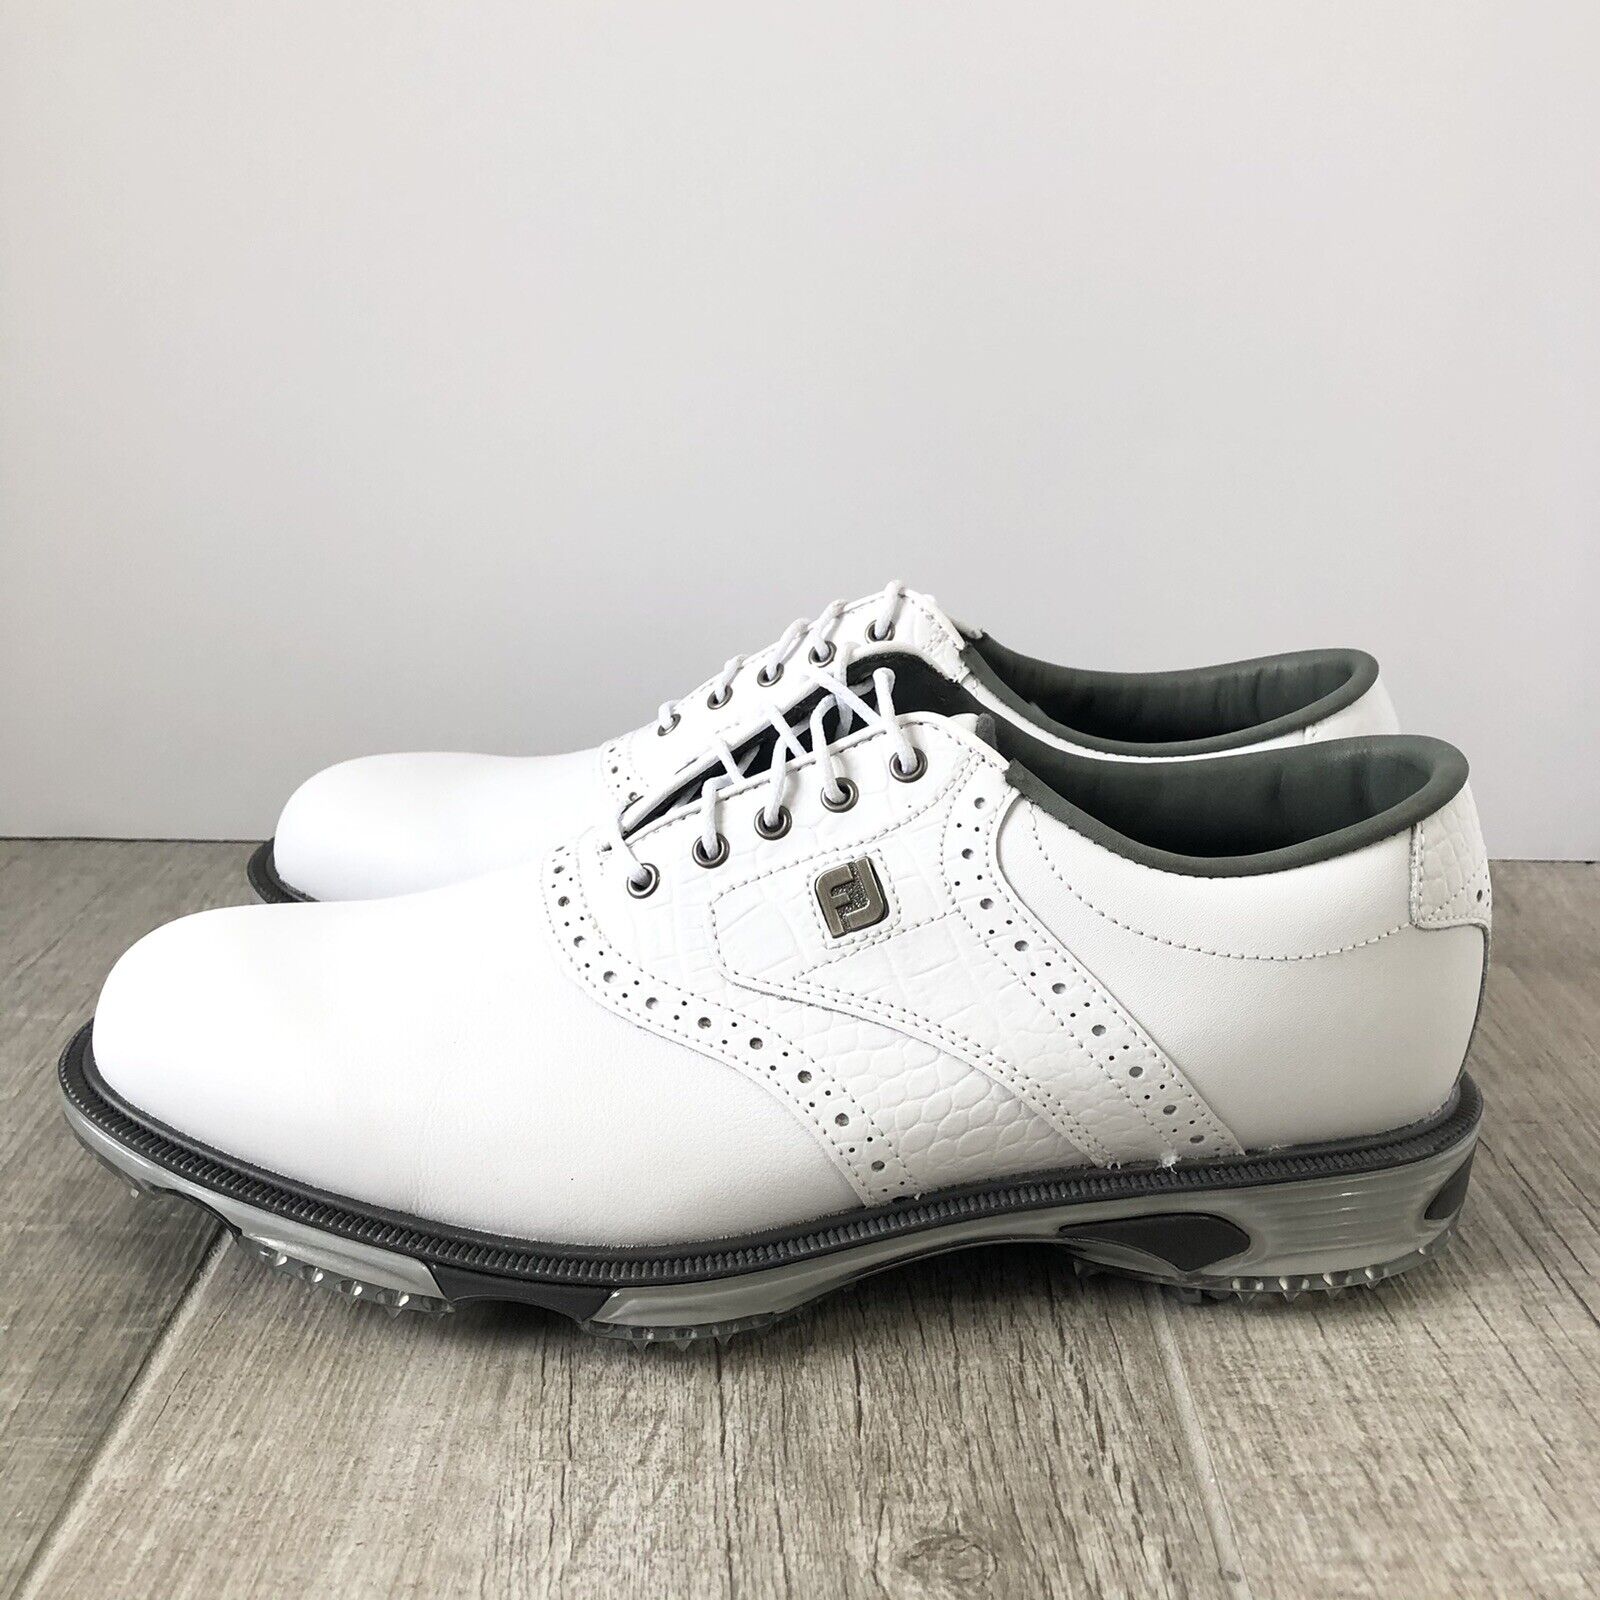 FootJoy DryJoys Tour Golf Shoes 53673 White/White Croc Men\'s Size 10.5